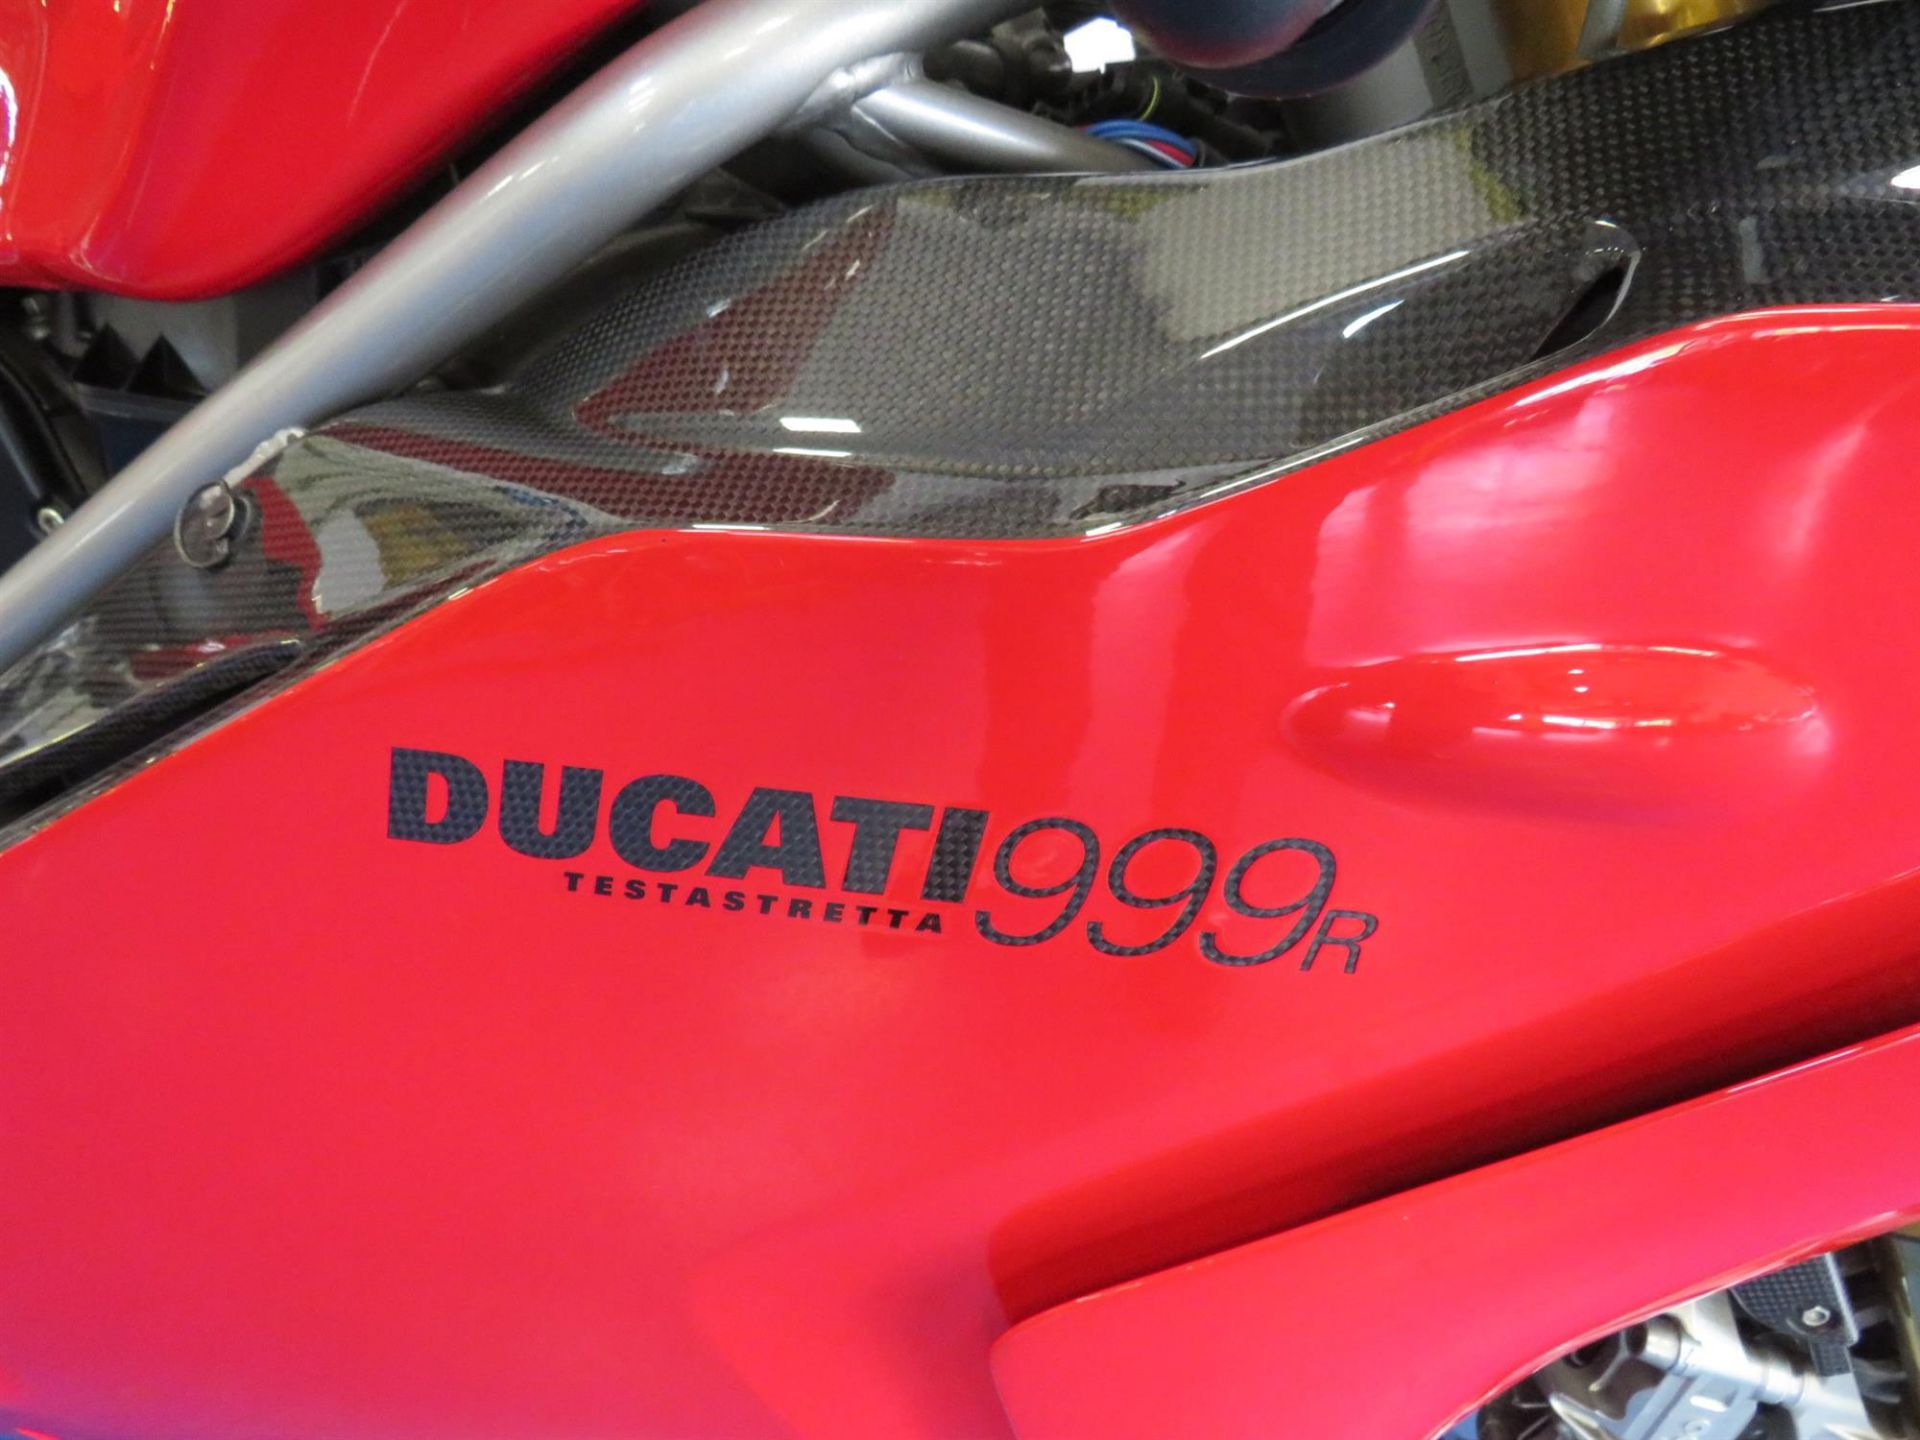 2003 Ducati 999R 999cc - Image 6 of 10